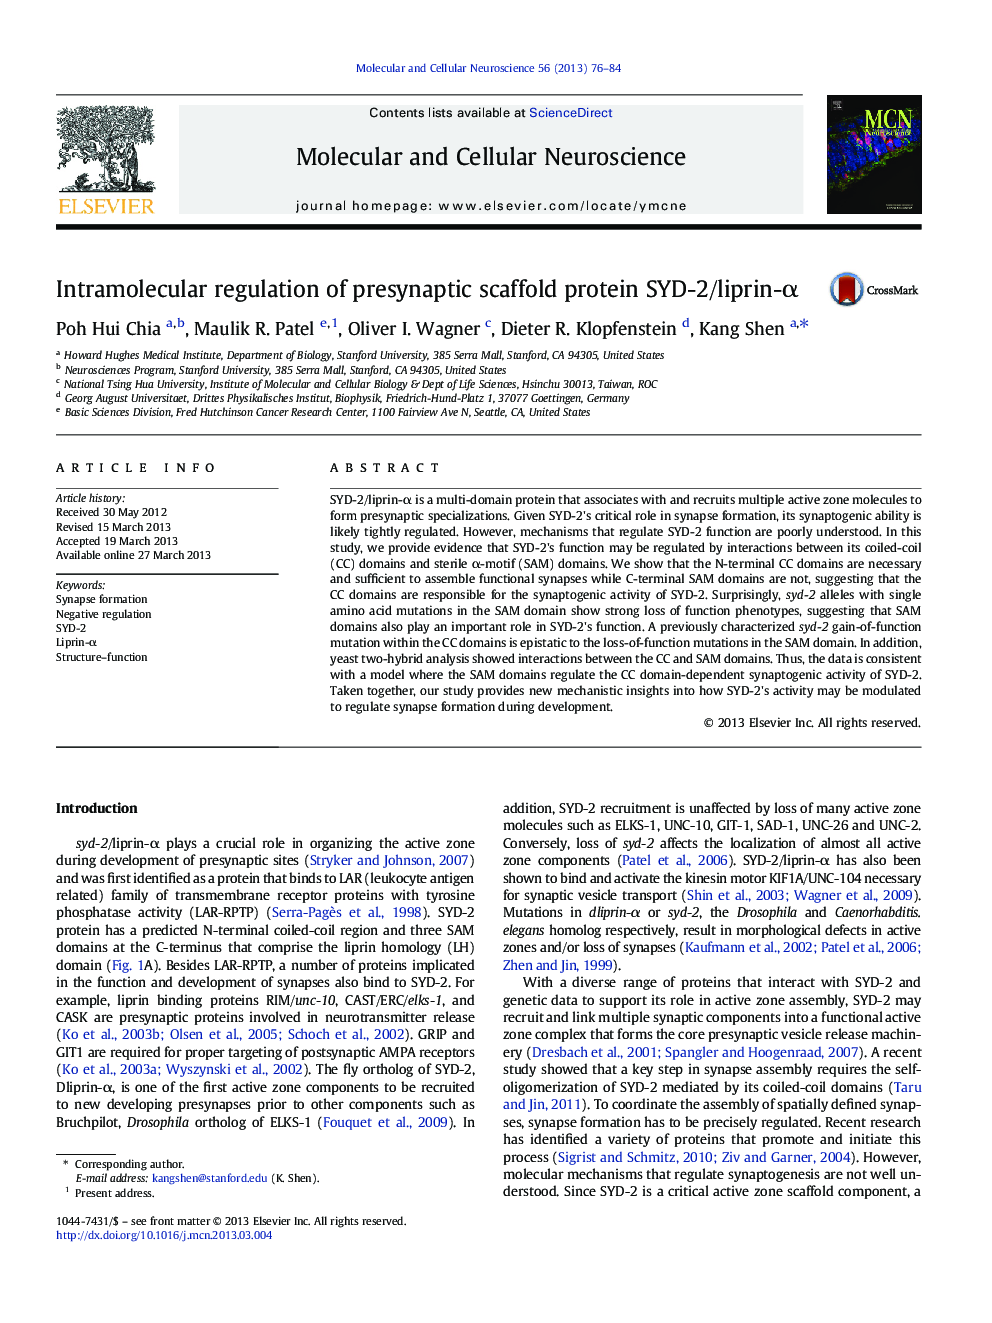 Intramolecular regulation of presynaptic scaffold protein SYD-2/liprin-Î±